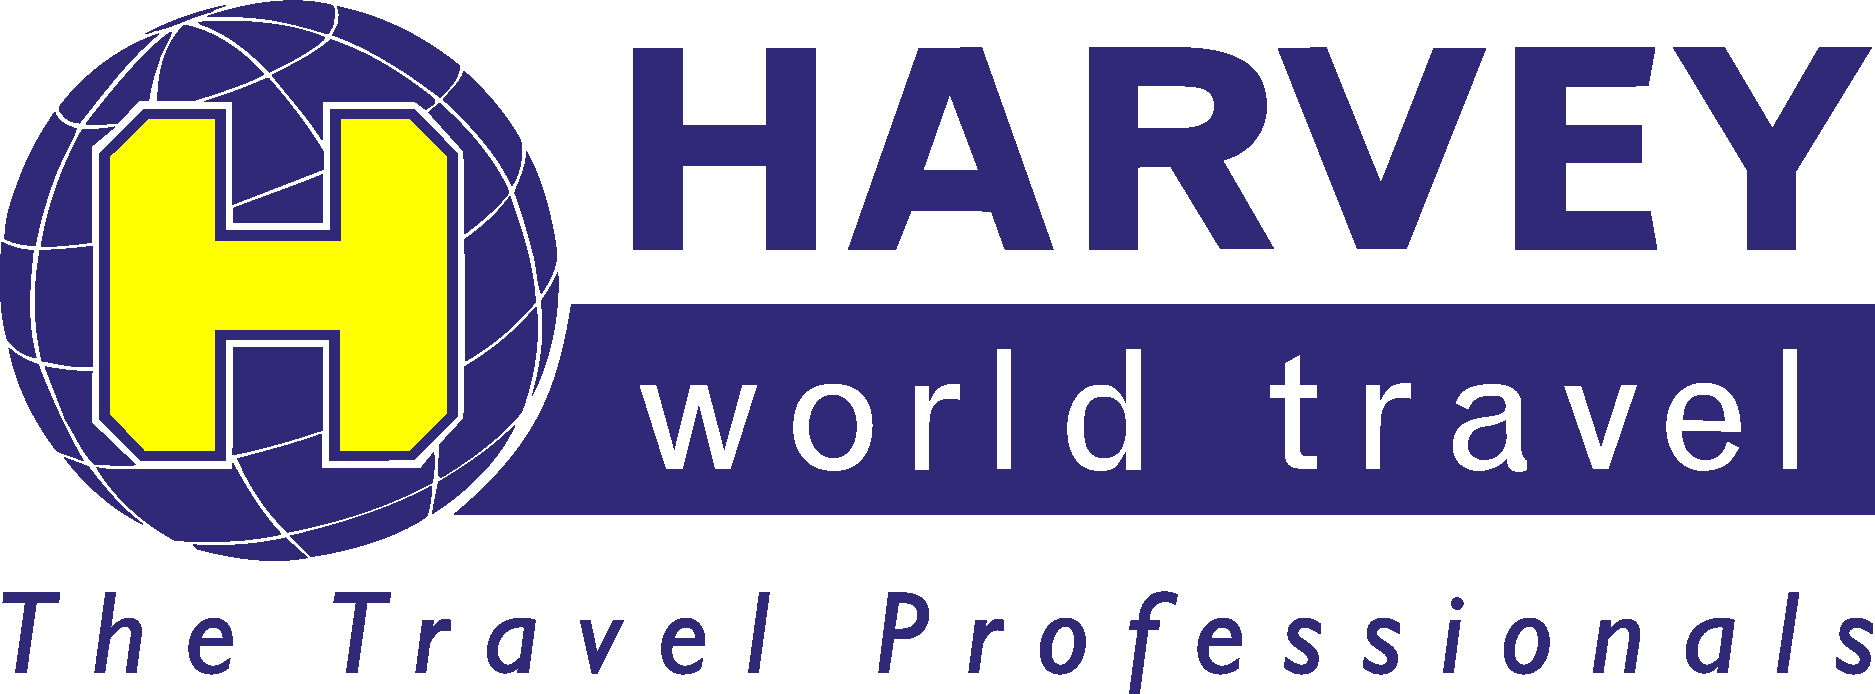 harvey world travel horsham